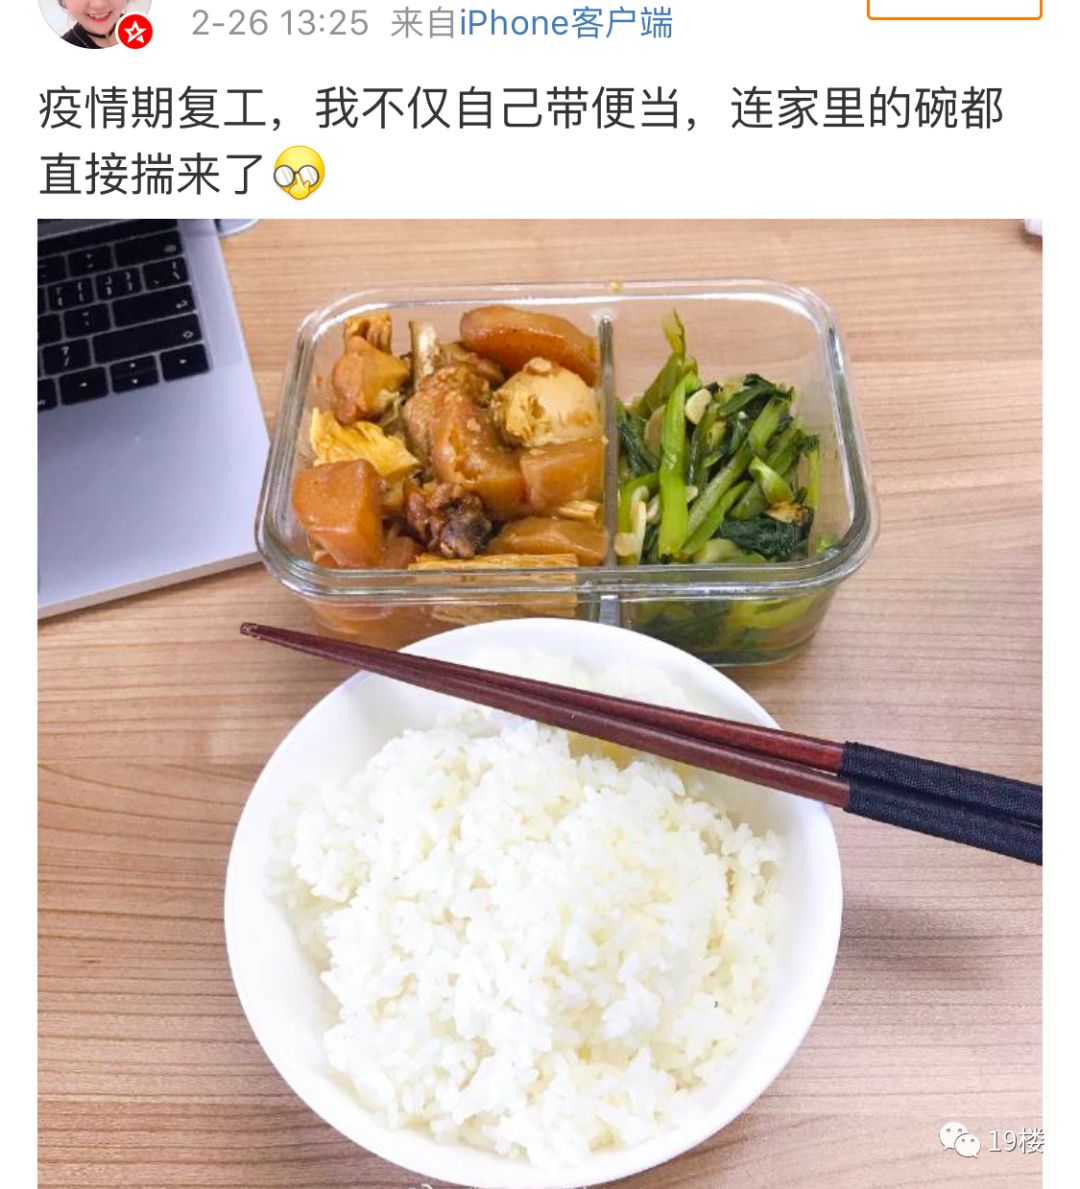 复工后,杭州网友纷纷晒出自制便当,有人把家里的碗都端来了